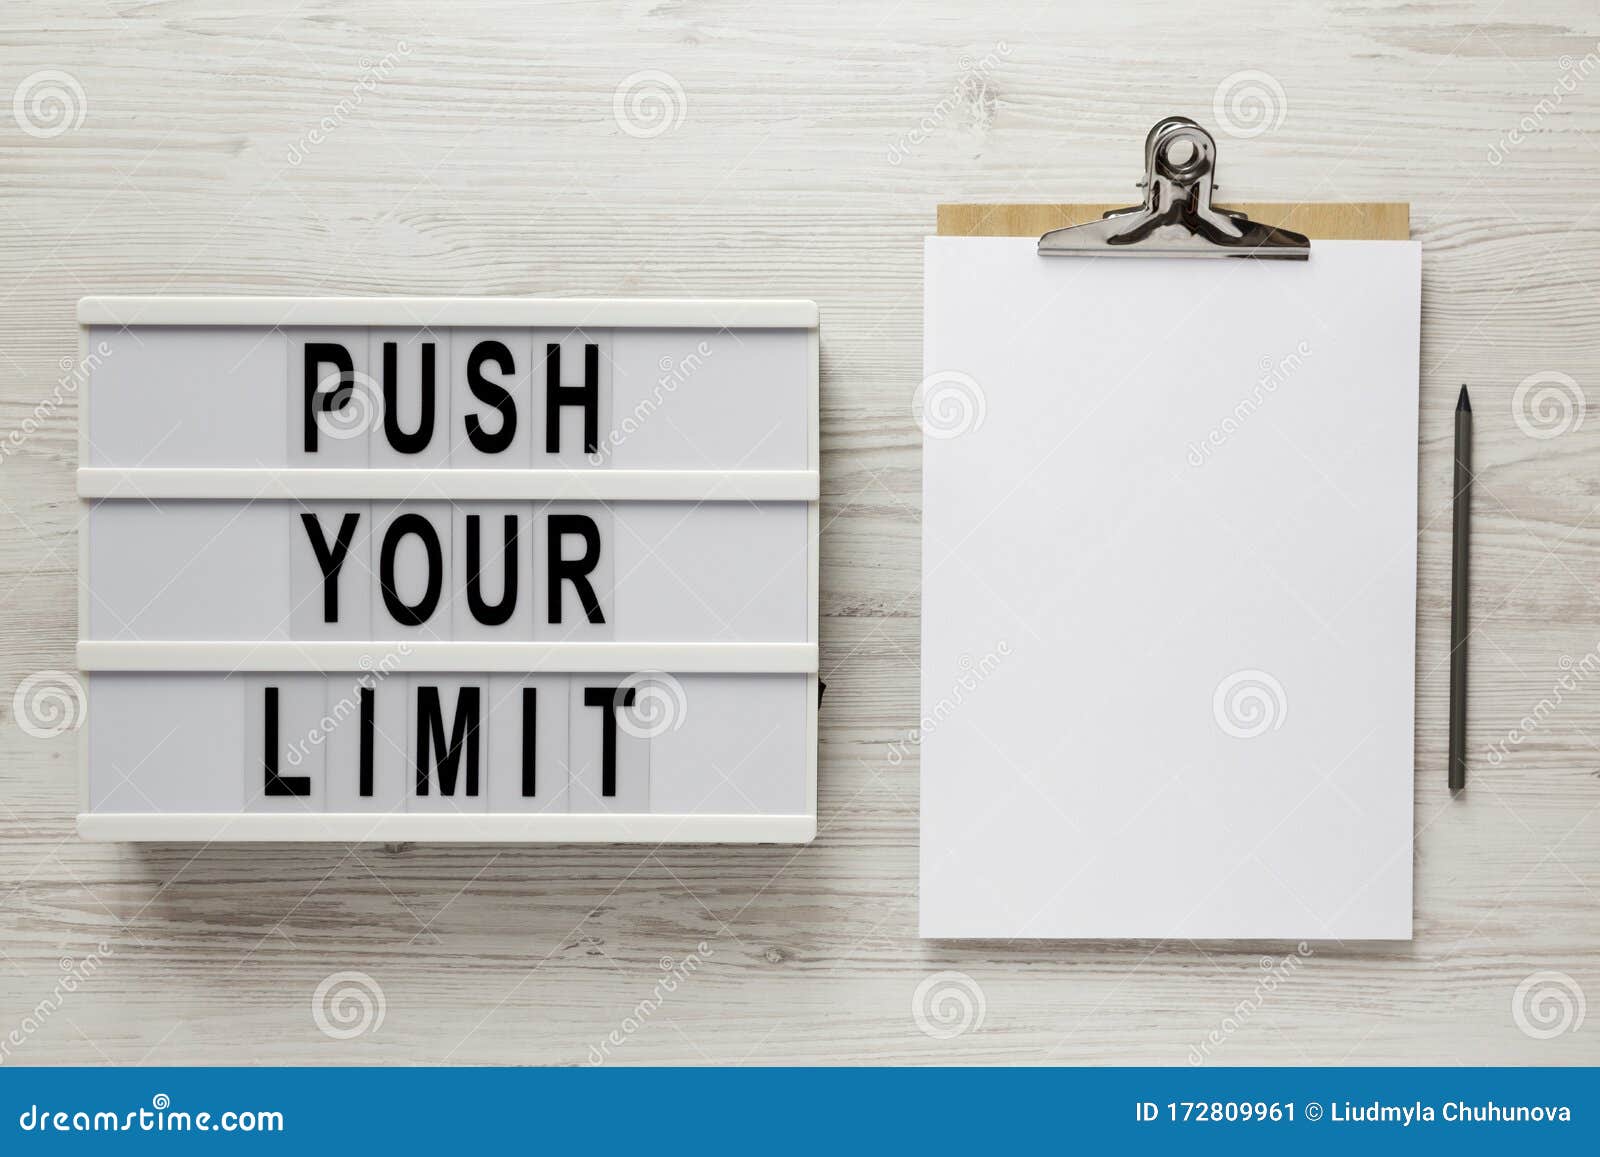 Limit text. Push your limits. Push your limits Print. Push your limits text.